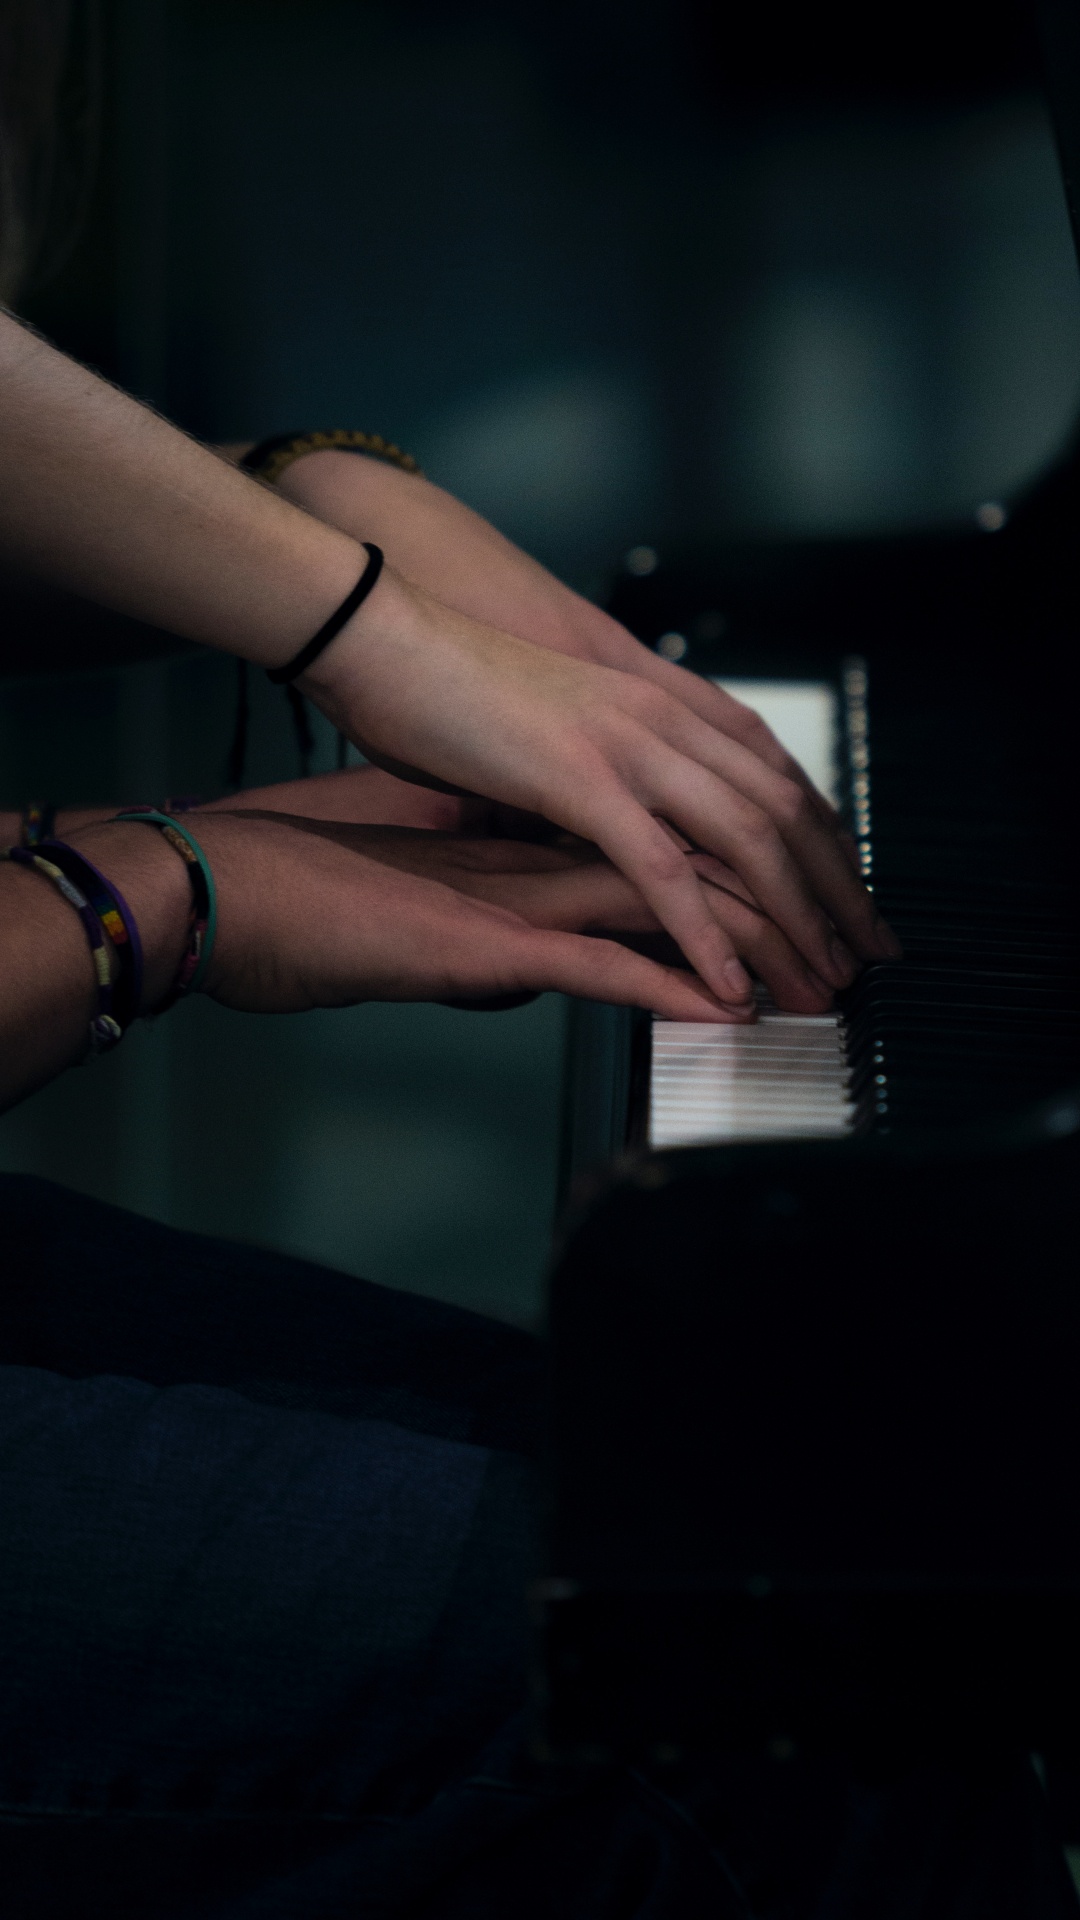 钢琴, 钢琴家, 手, 音乐家, 手臂 壁纸 1080x1920 允许